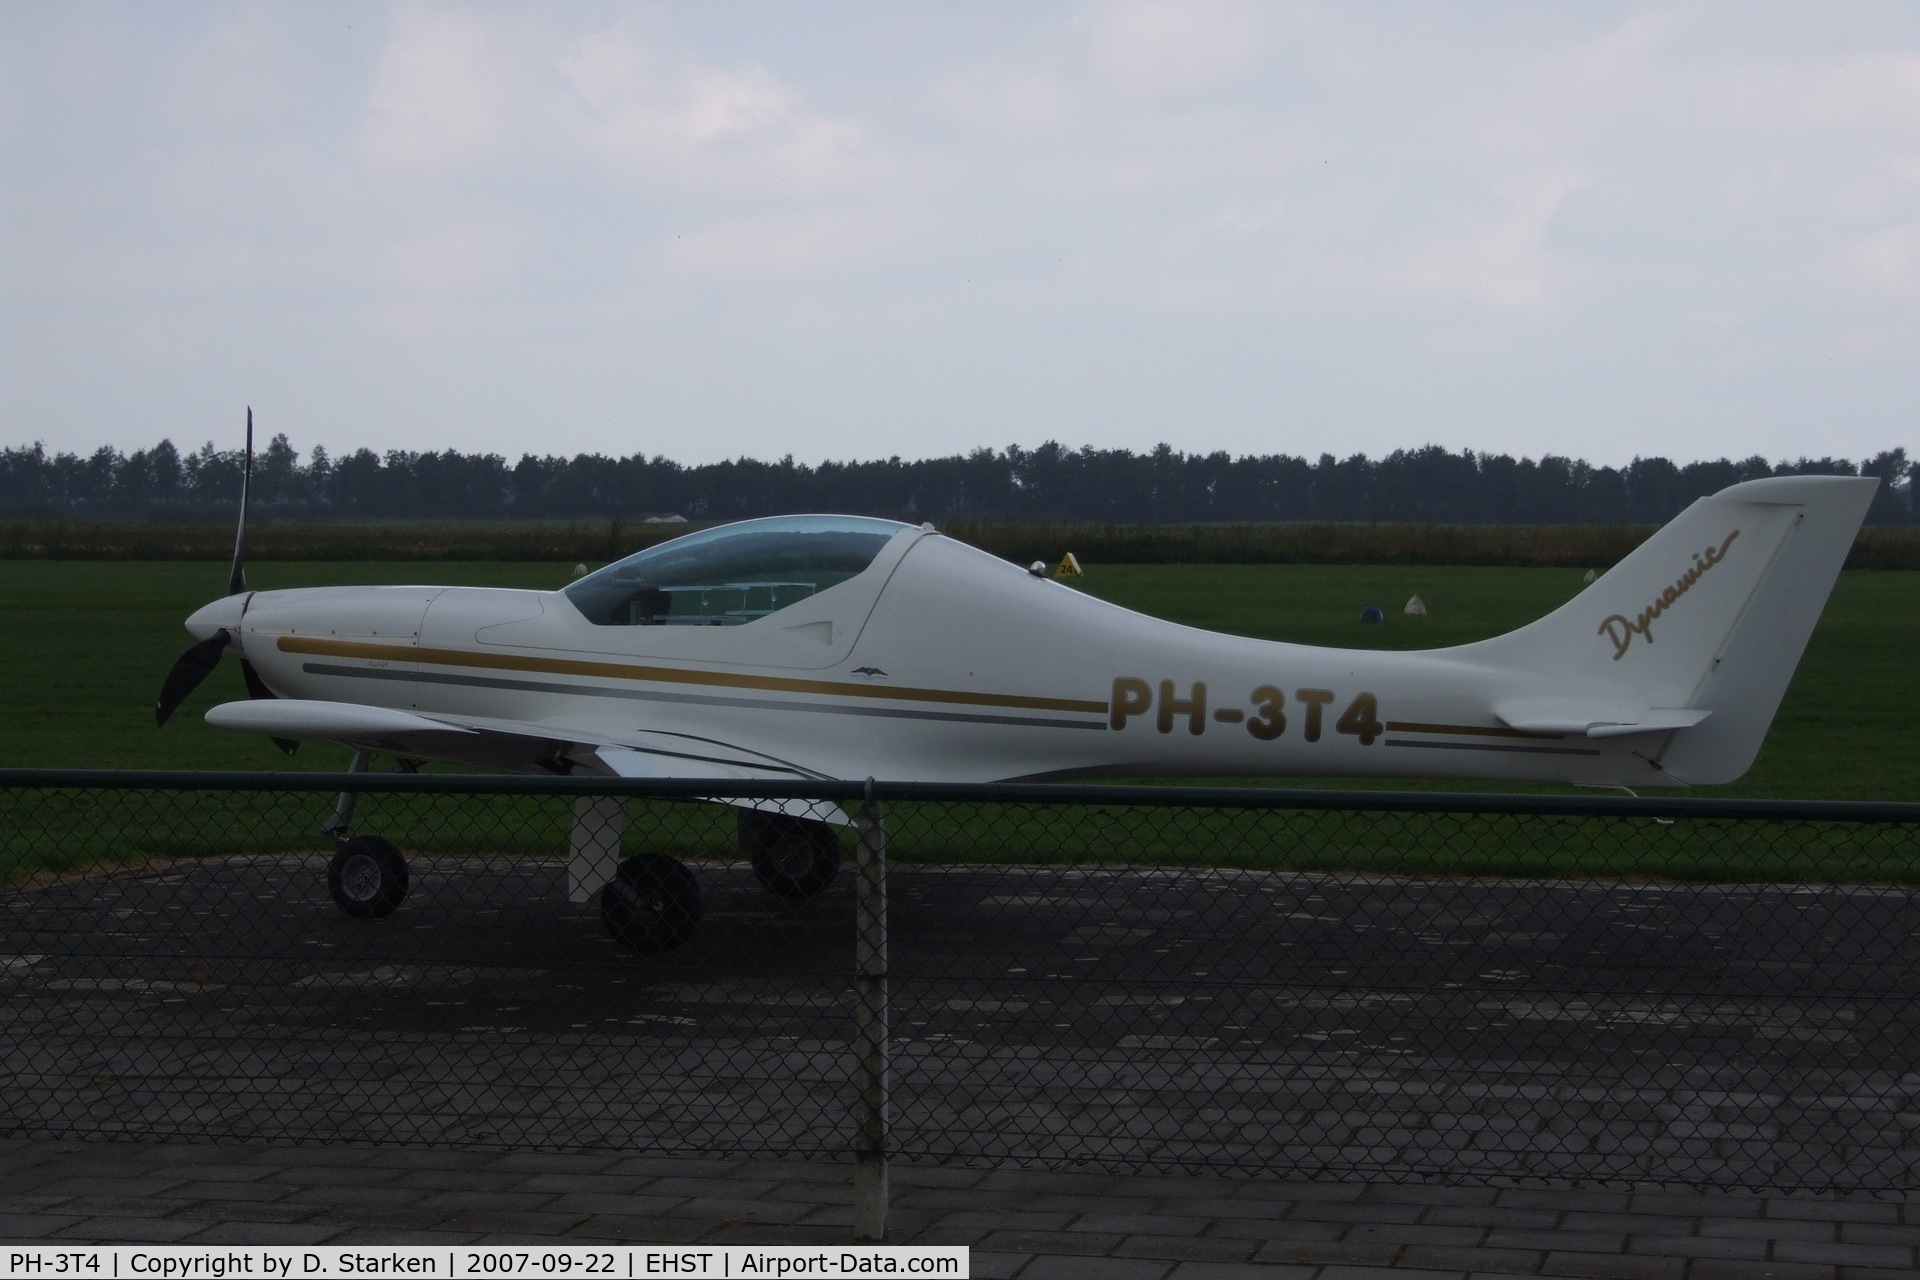 PH-3T4, 2003 Aerospool WT-9 Dynamic C/N DY032/2003, READY FOR STARTUP